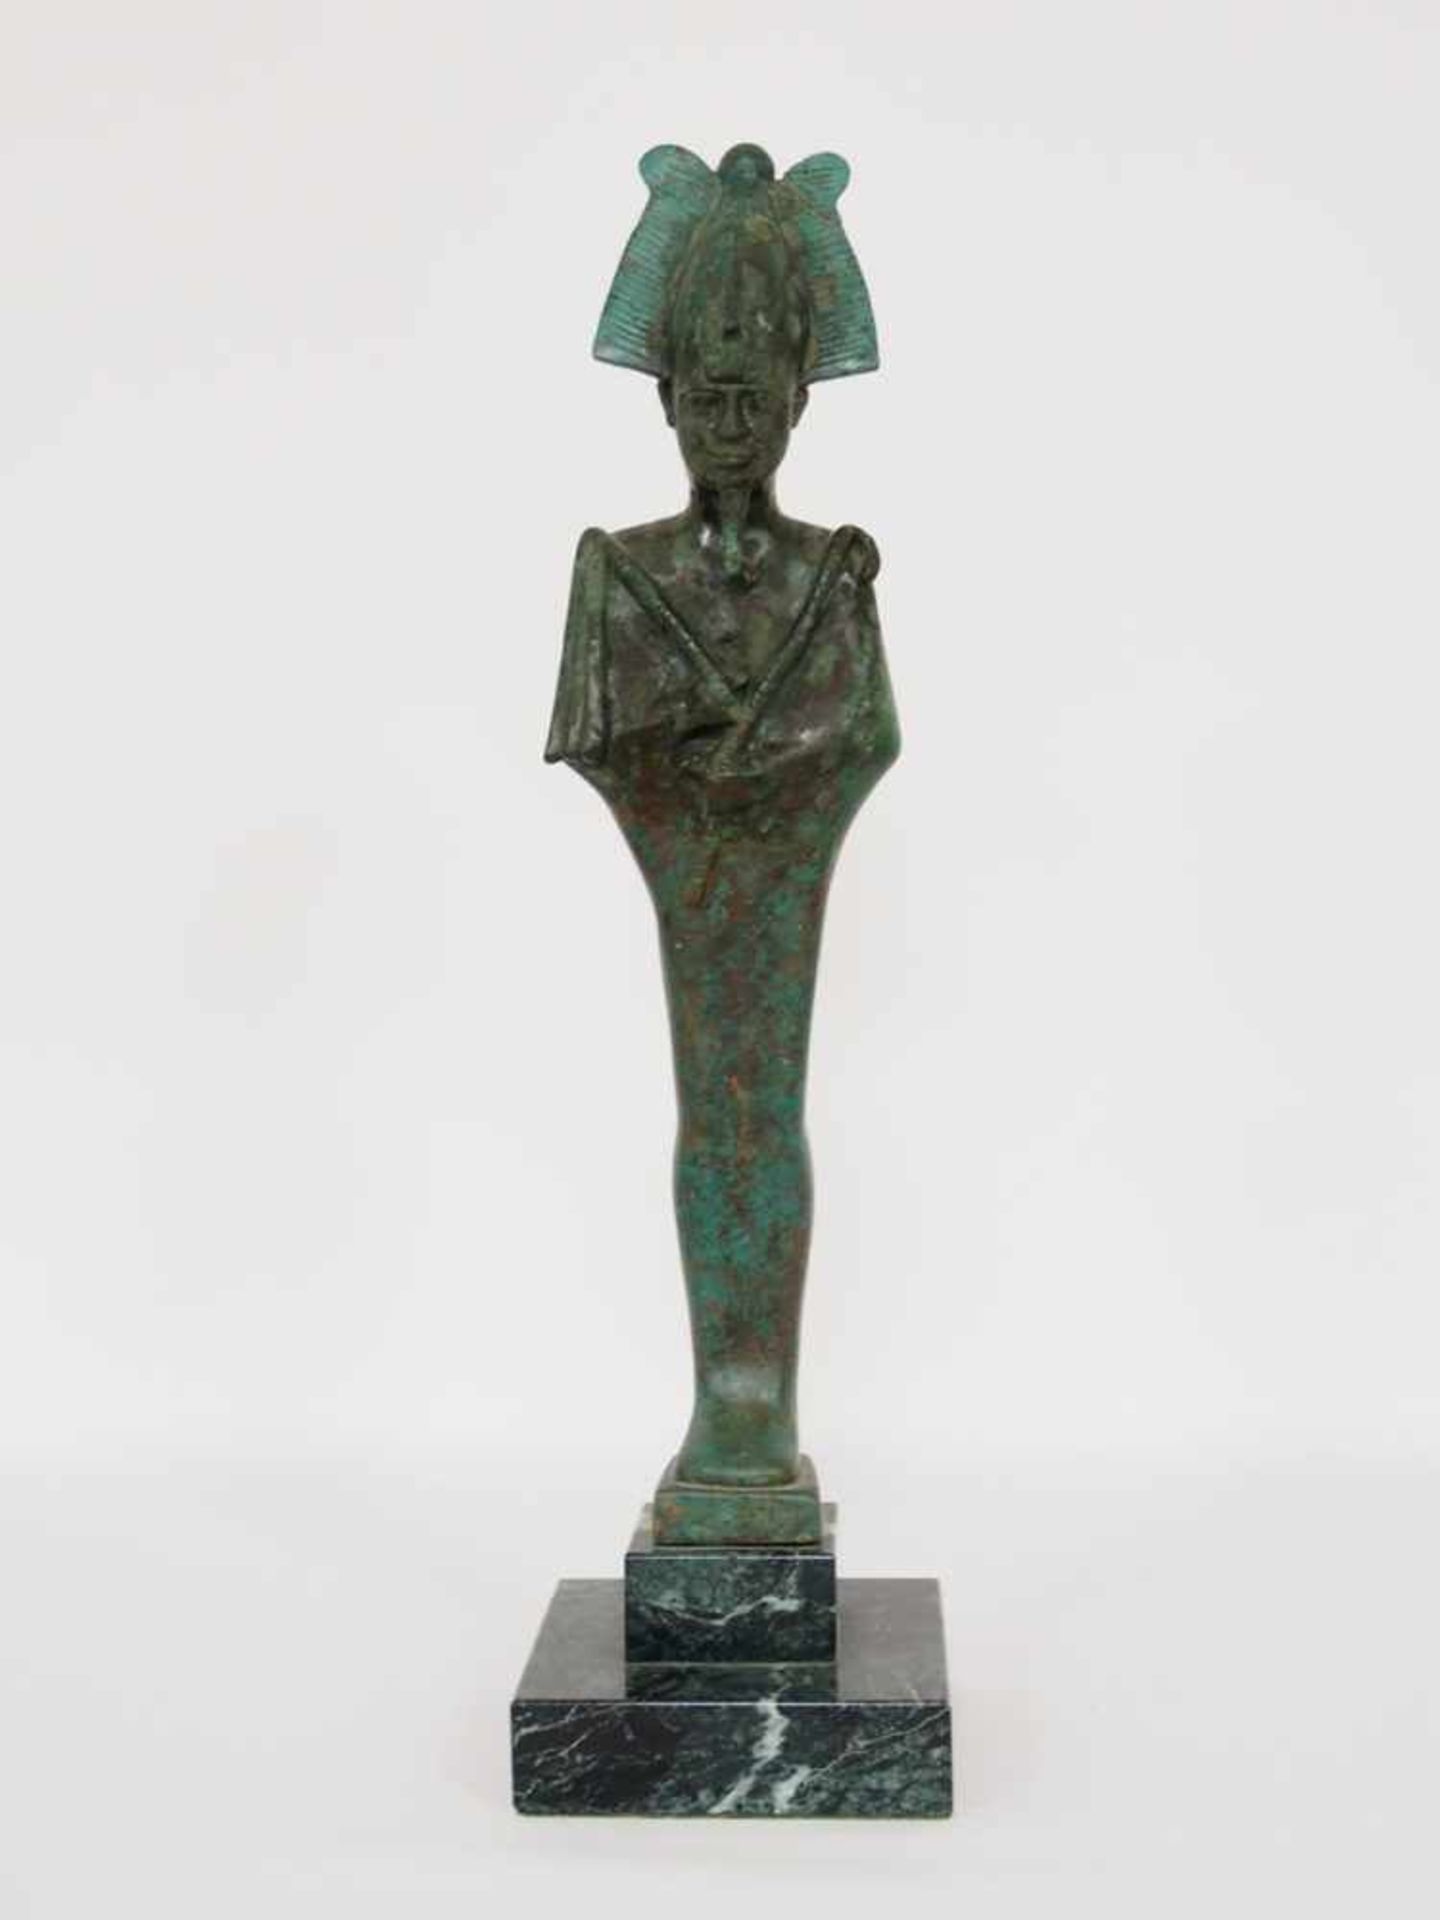 Statue des Gottes OsirisBronze, sehr stark restauriert, erhalten ist lediglich der Kopf mit Krone (